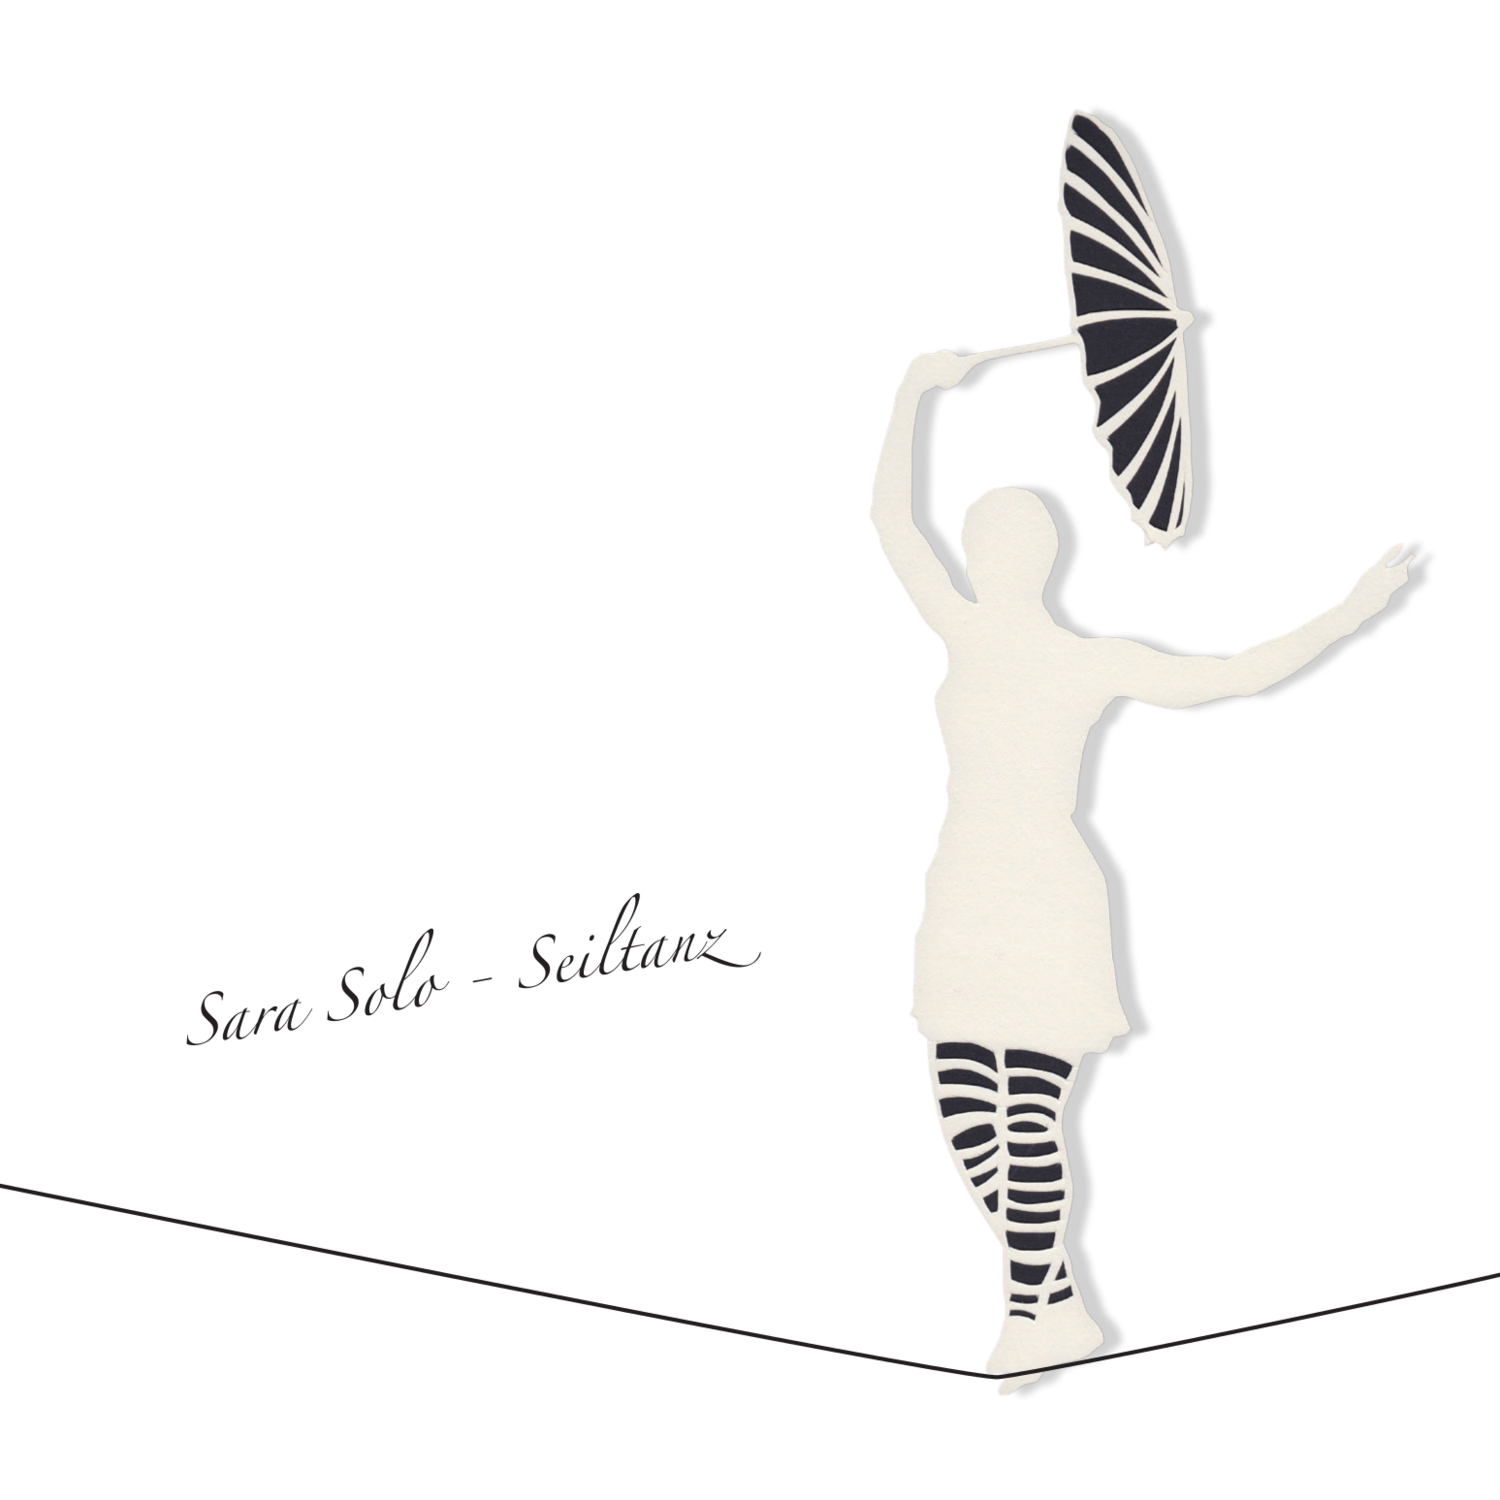 Sara Solo - Seiltanz